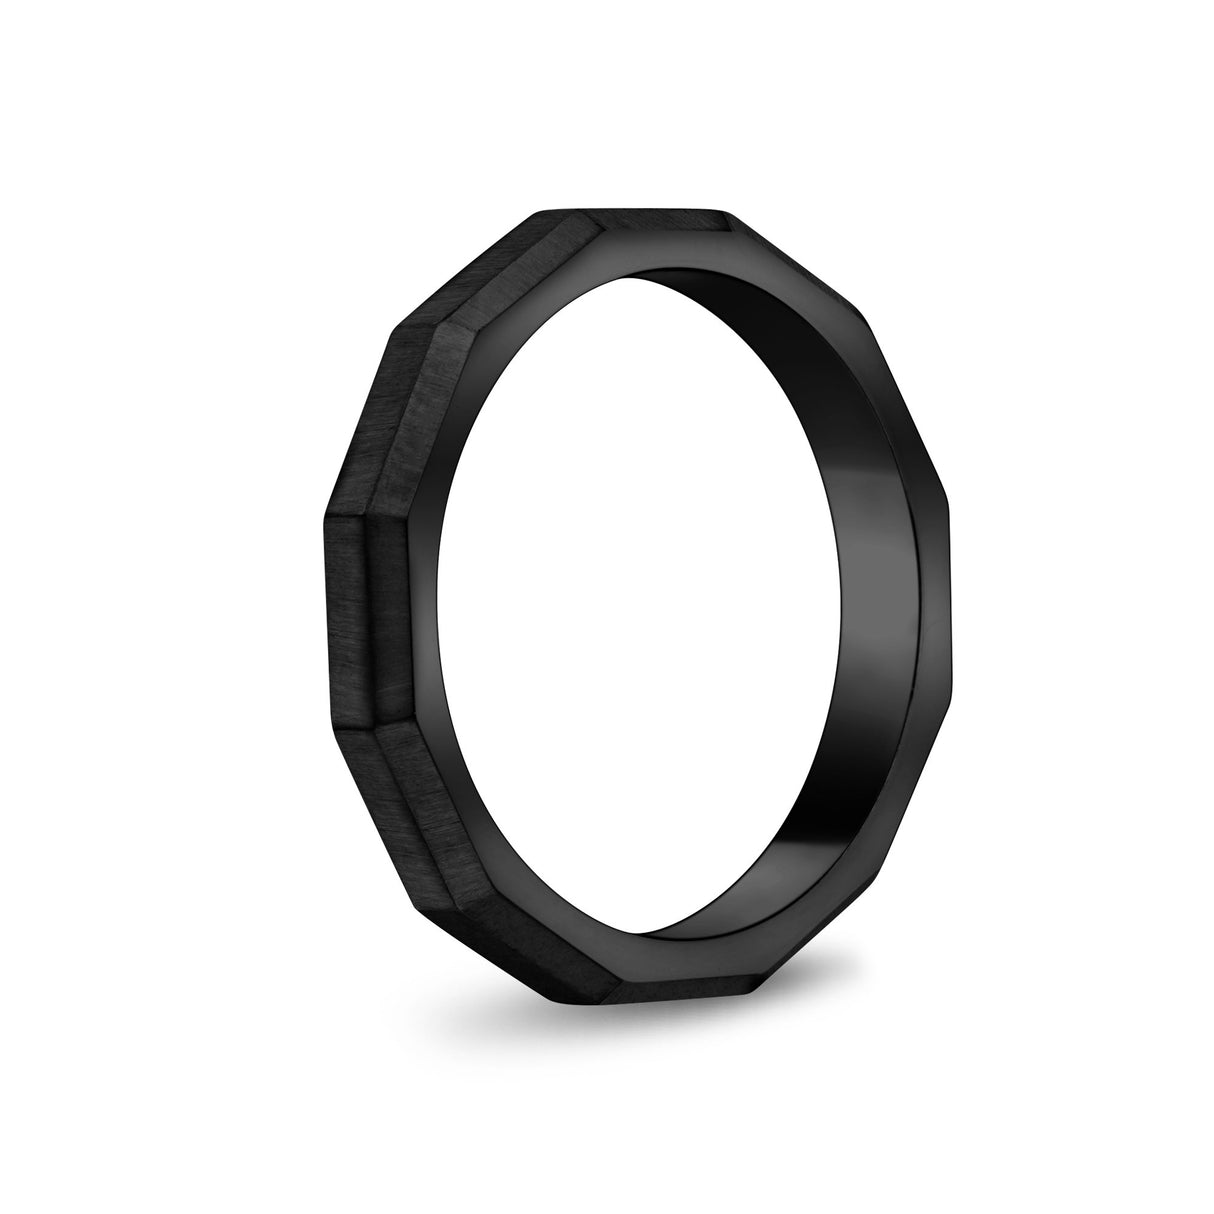 中性戒指 - 3mm刻面啞光黑鋼中性可雕刻帶戒指